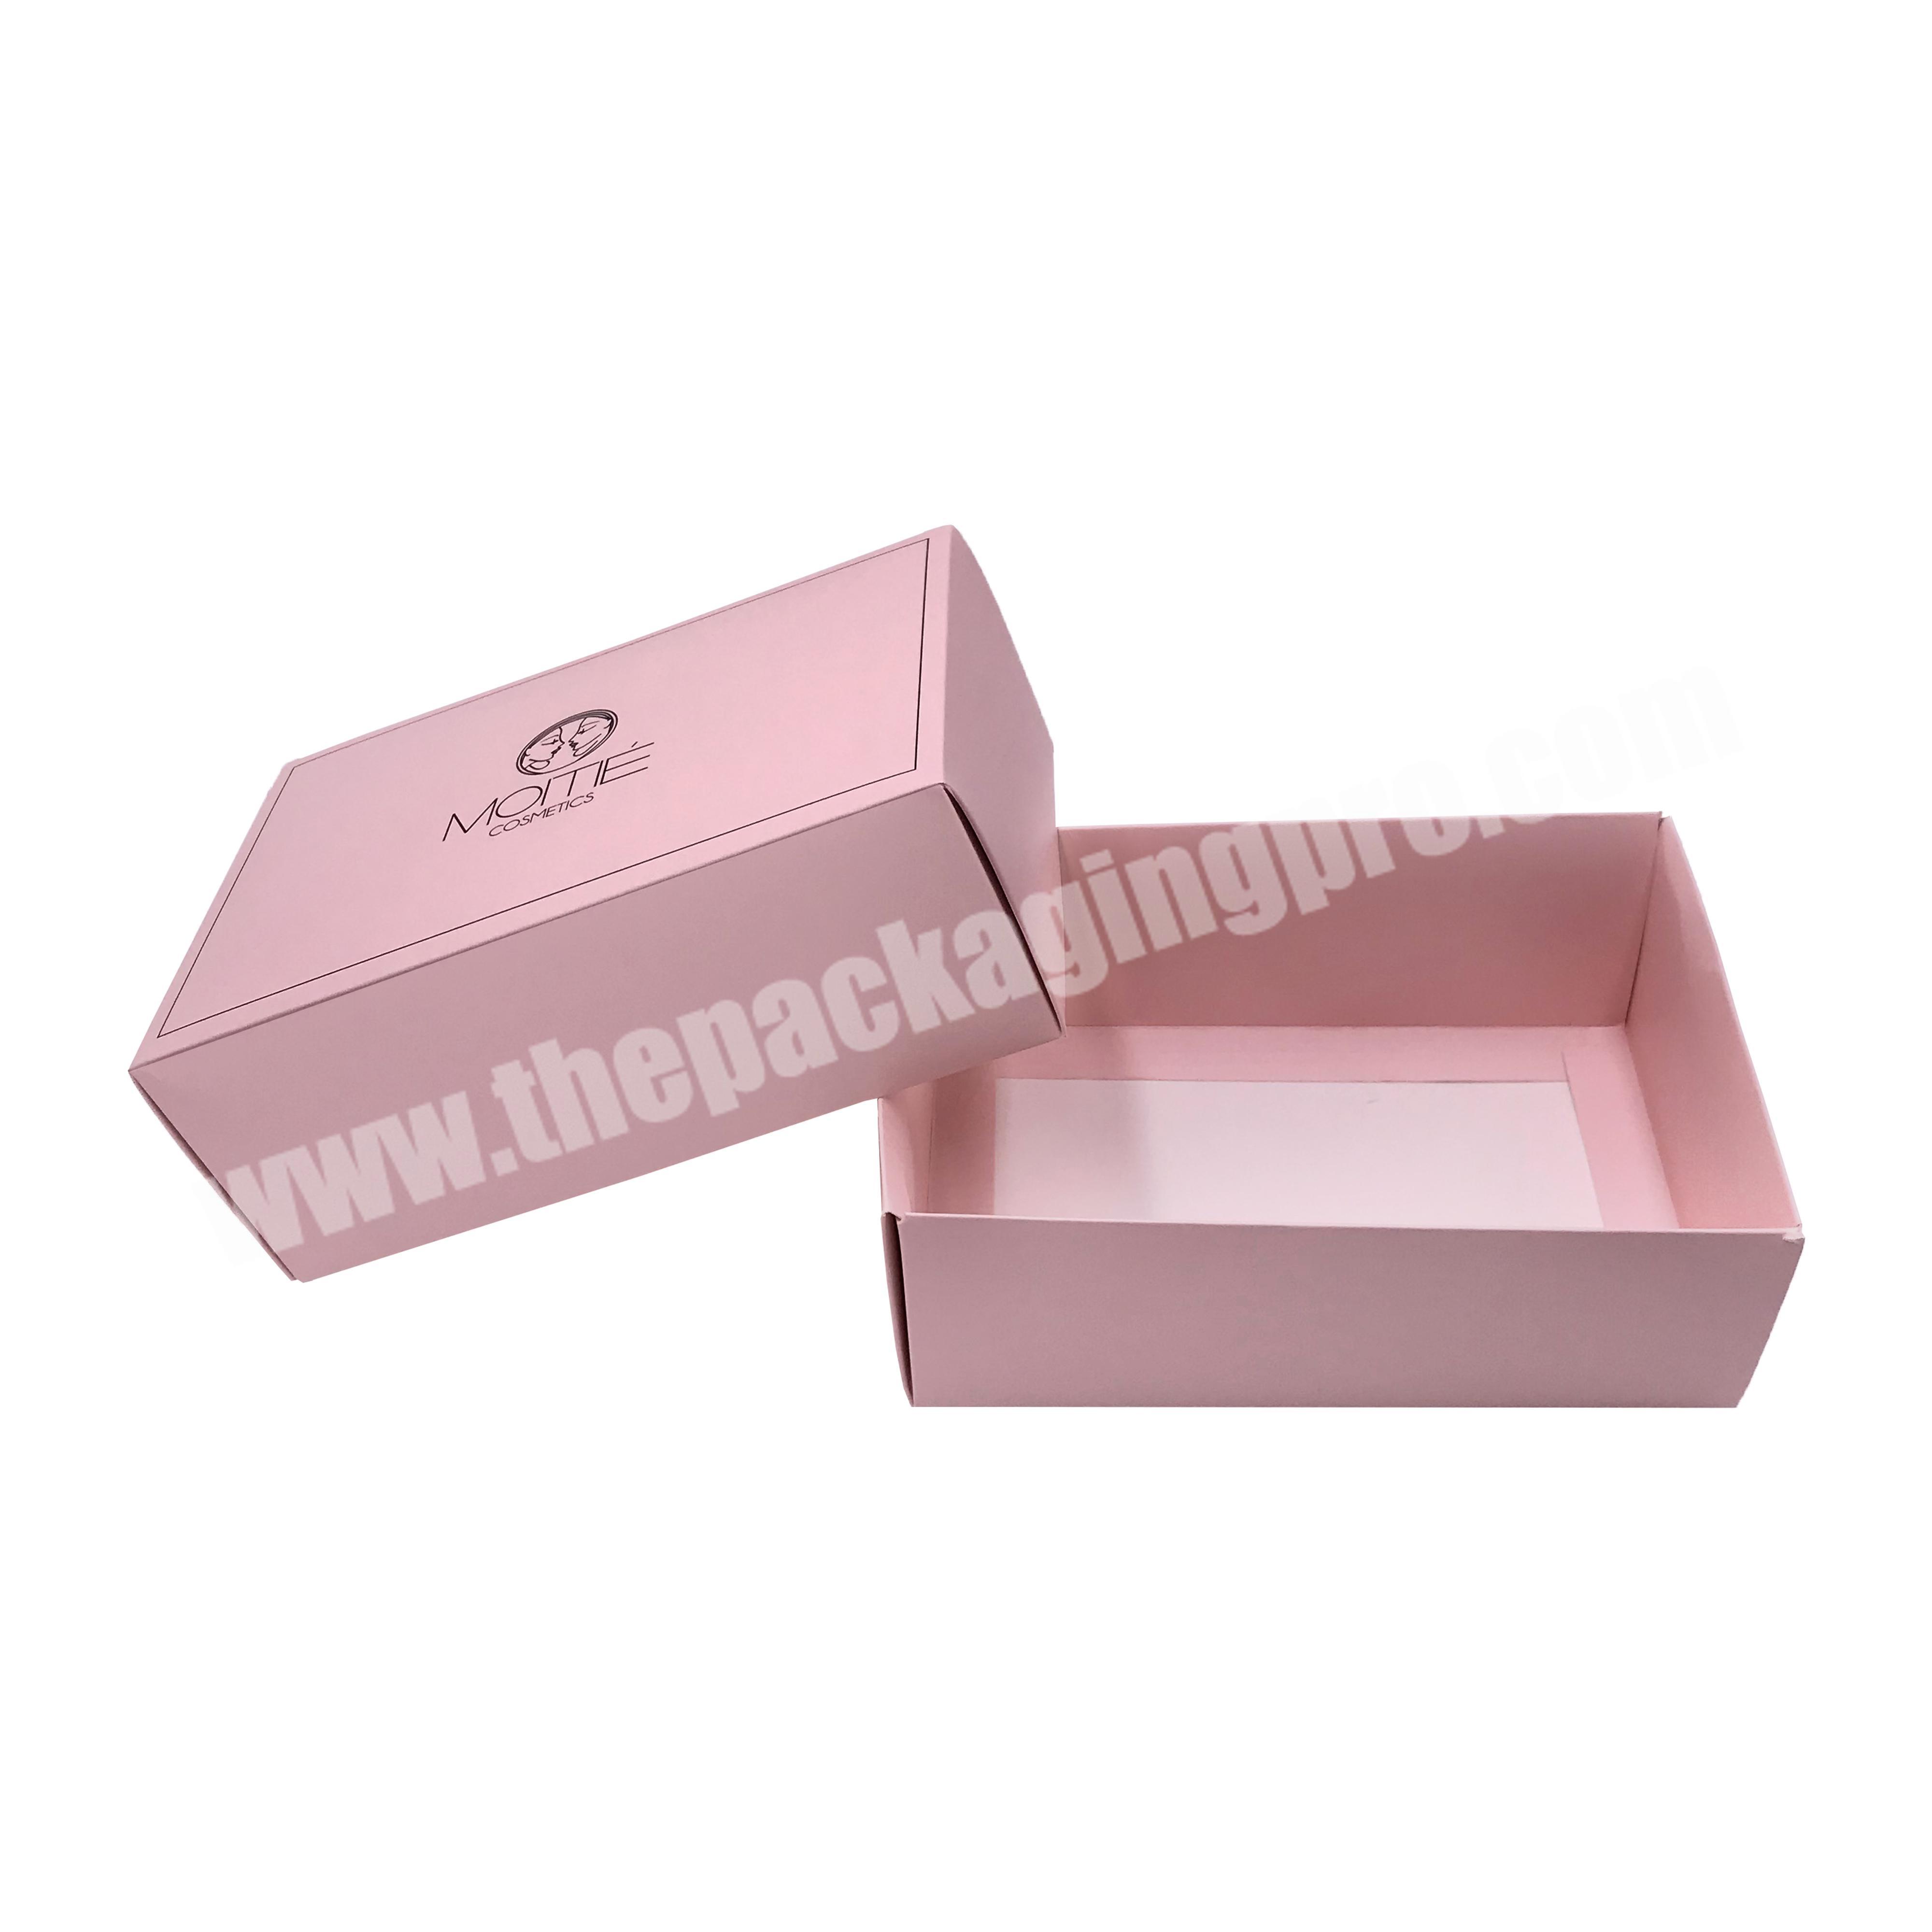 China manufacturer watch packaging gift box underwear storage sunglass cardboard